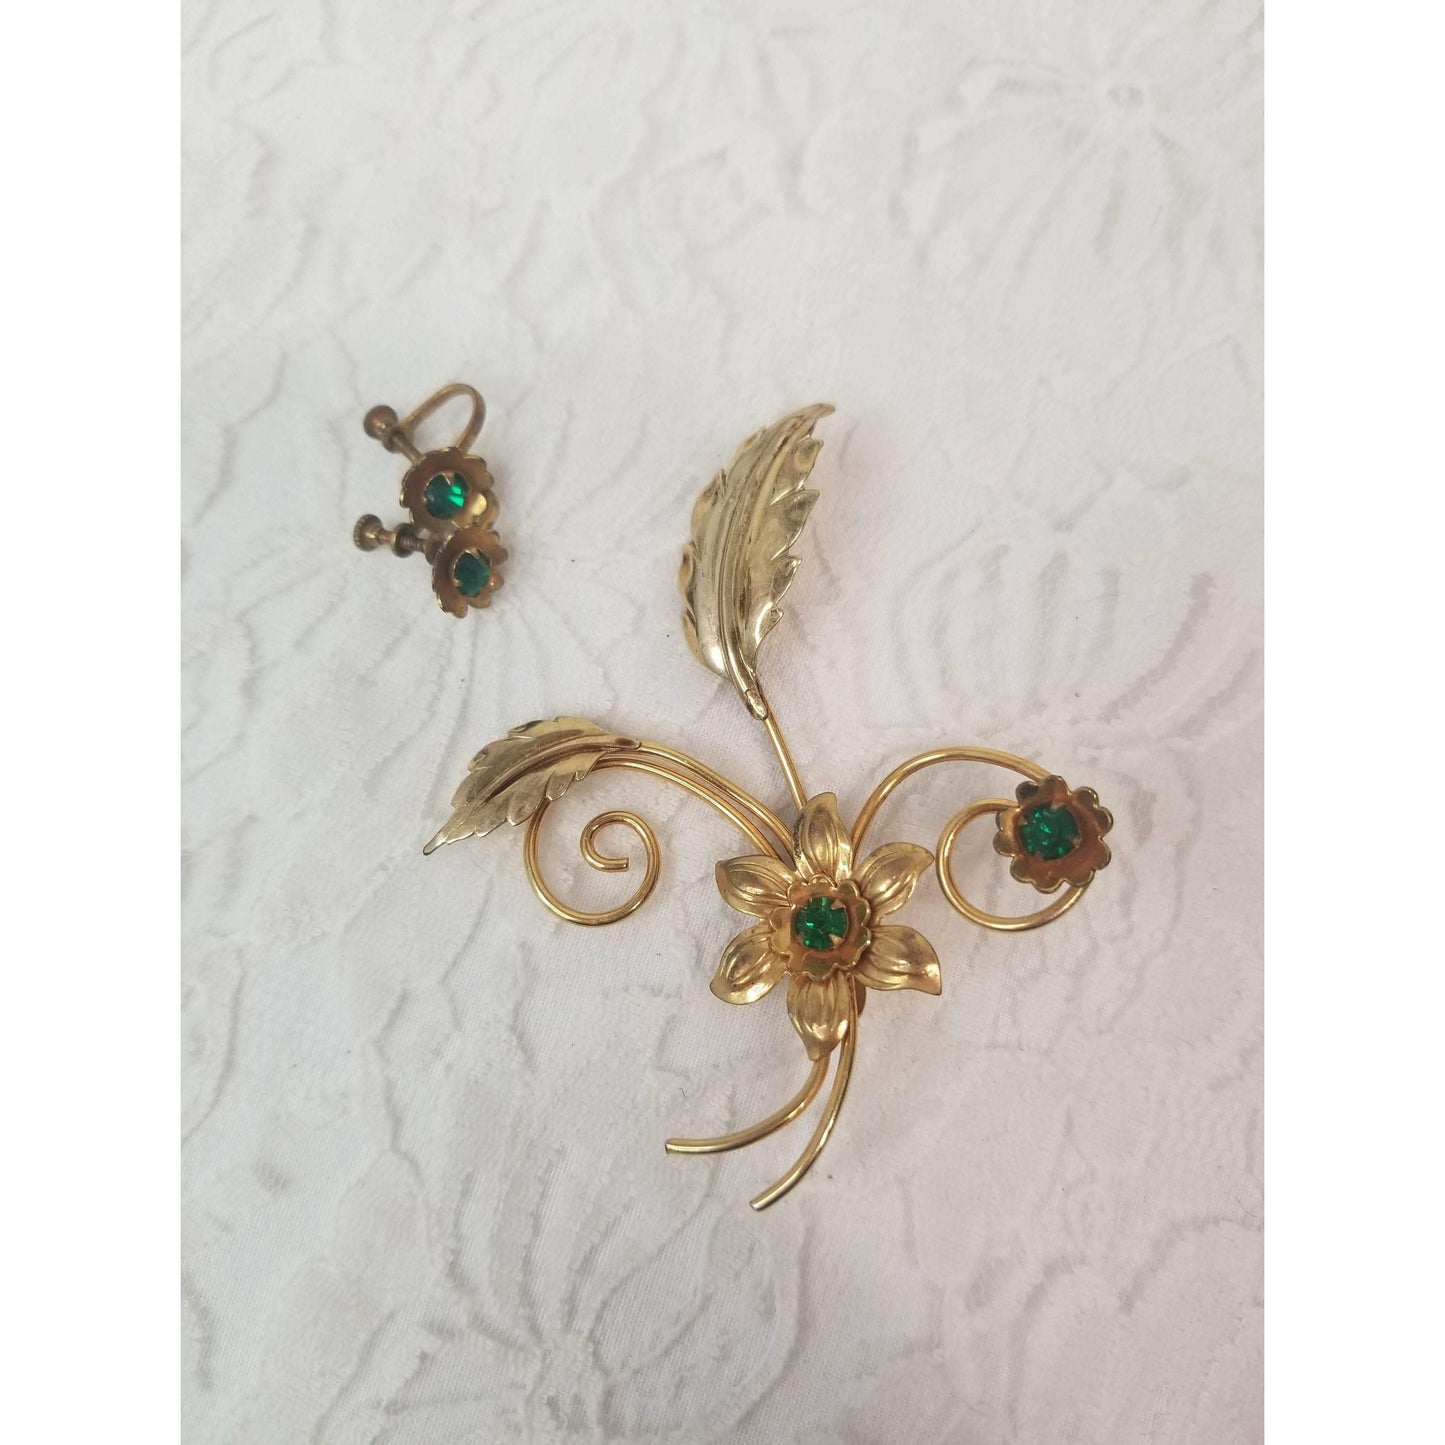 Vintage Jewelry Set Green Cut Glass Rhinestone Earrings and Brooch Set ~ 1/20 12K gold Filled ~ Signed Allen ~ Retro Screw Back Earrings